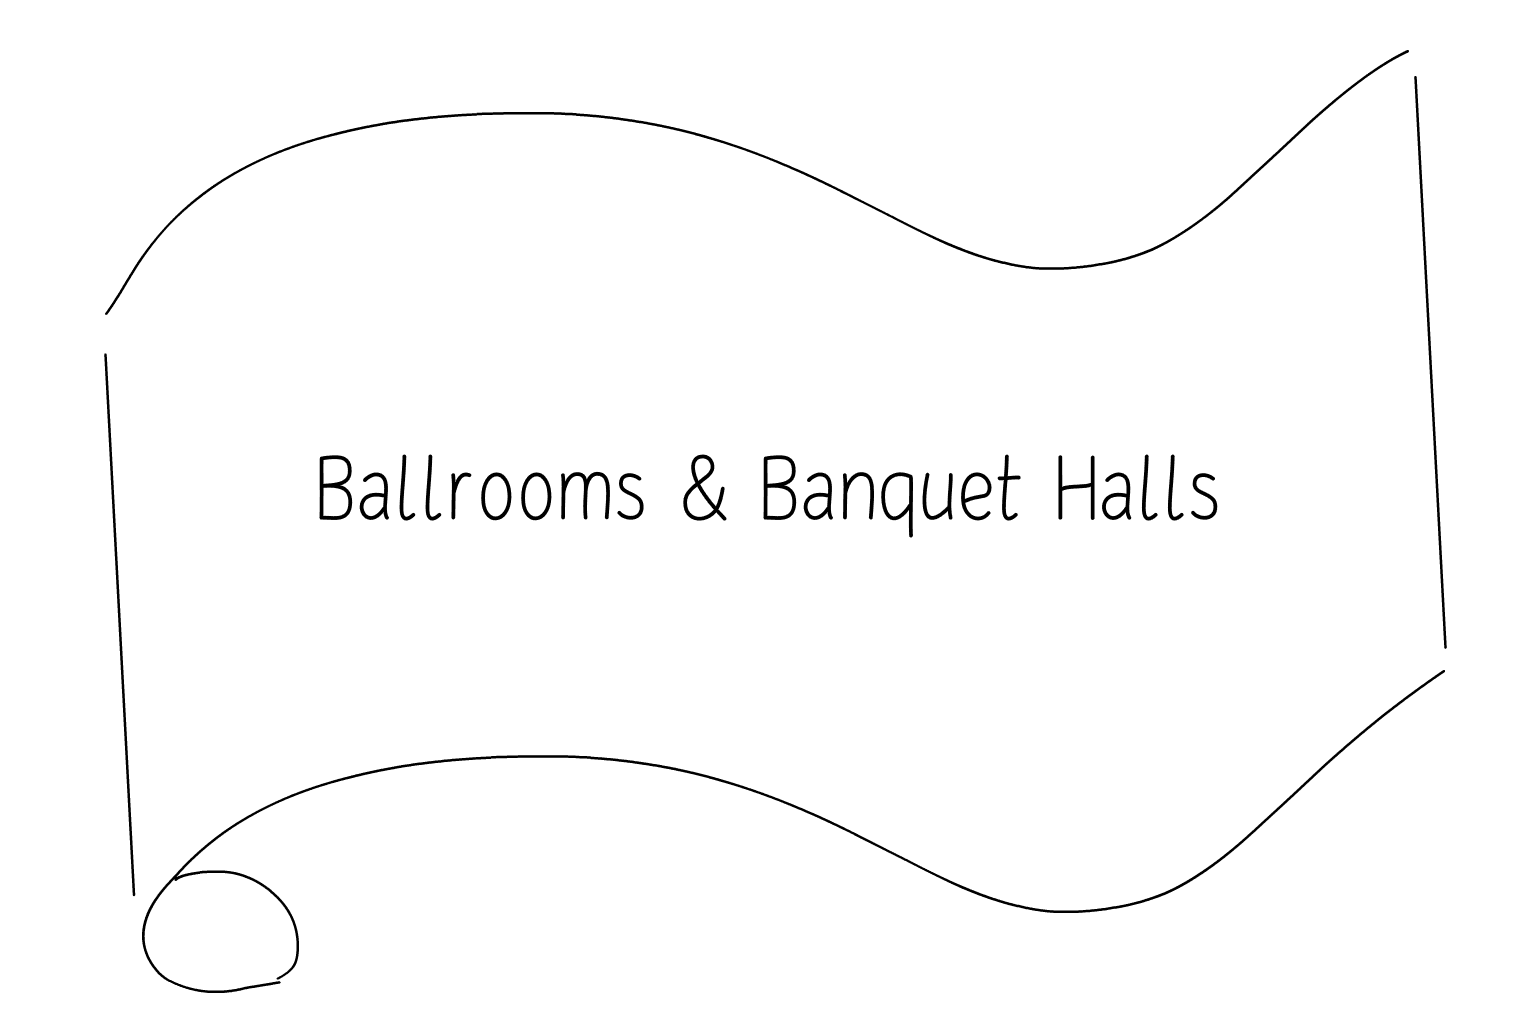 Illustration of Ballrooms & Banquet Halls